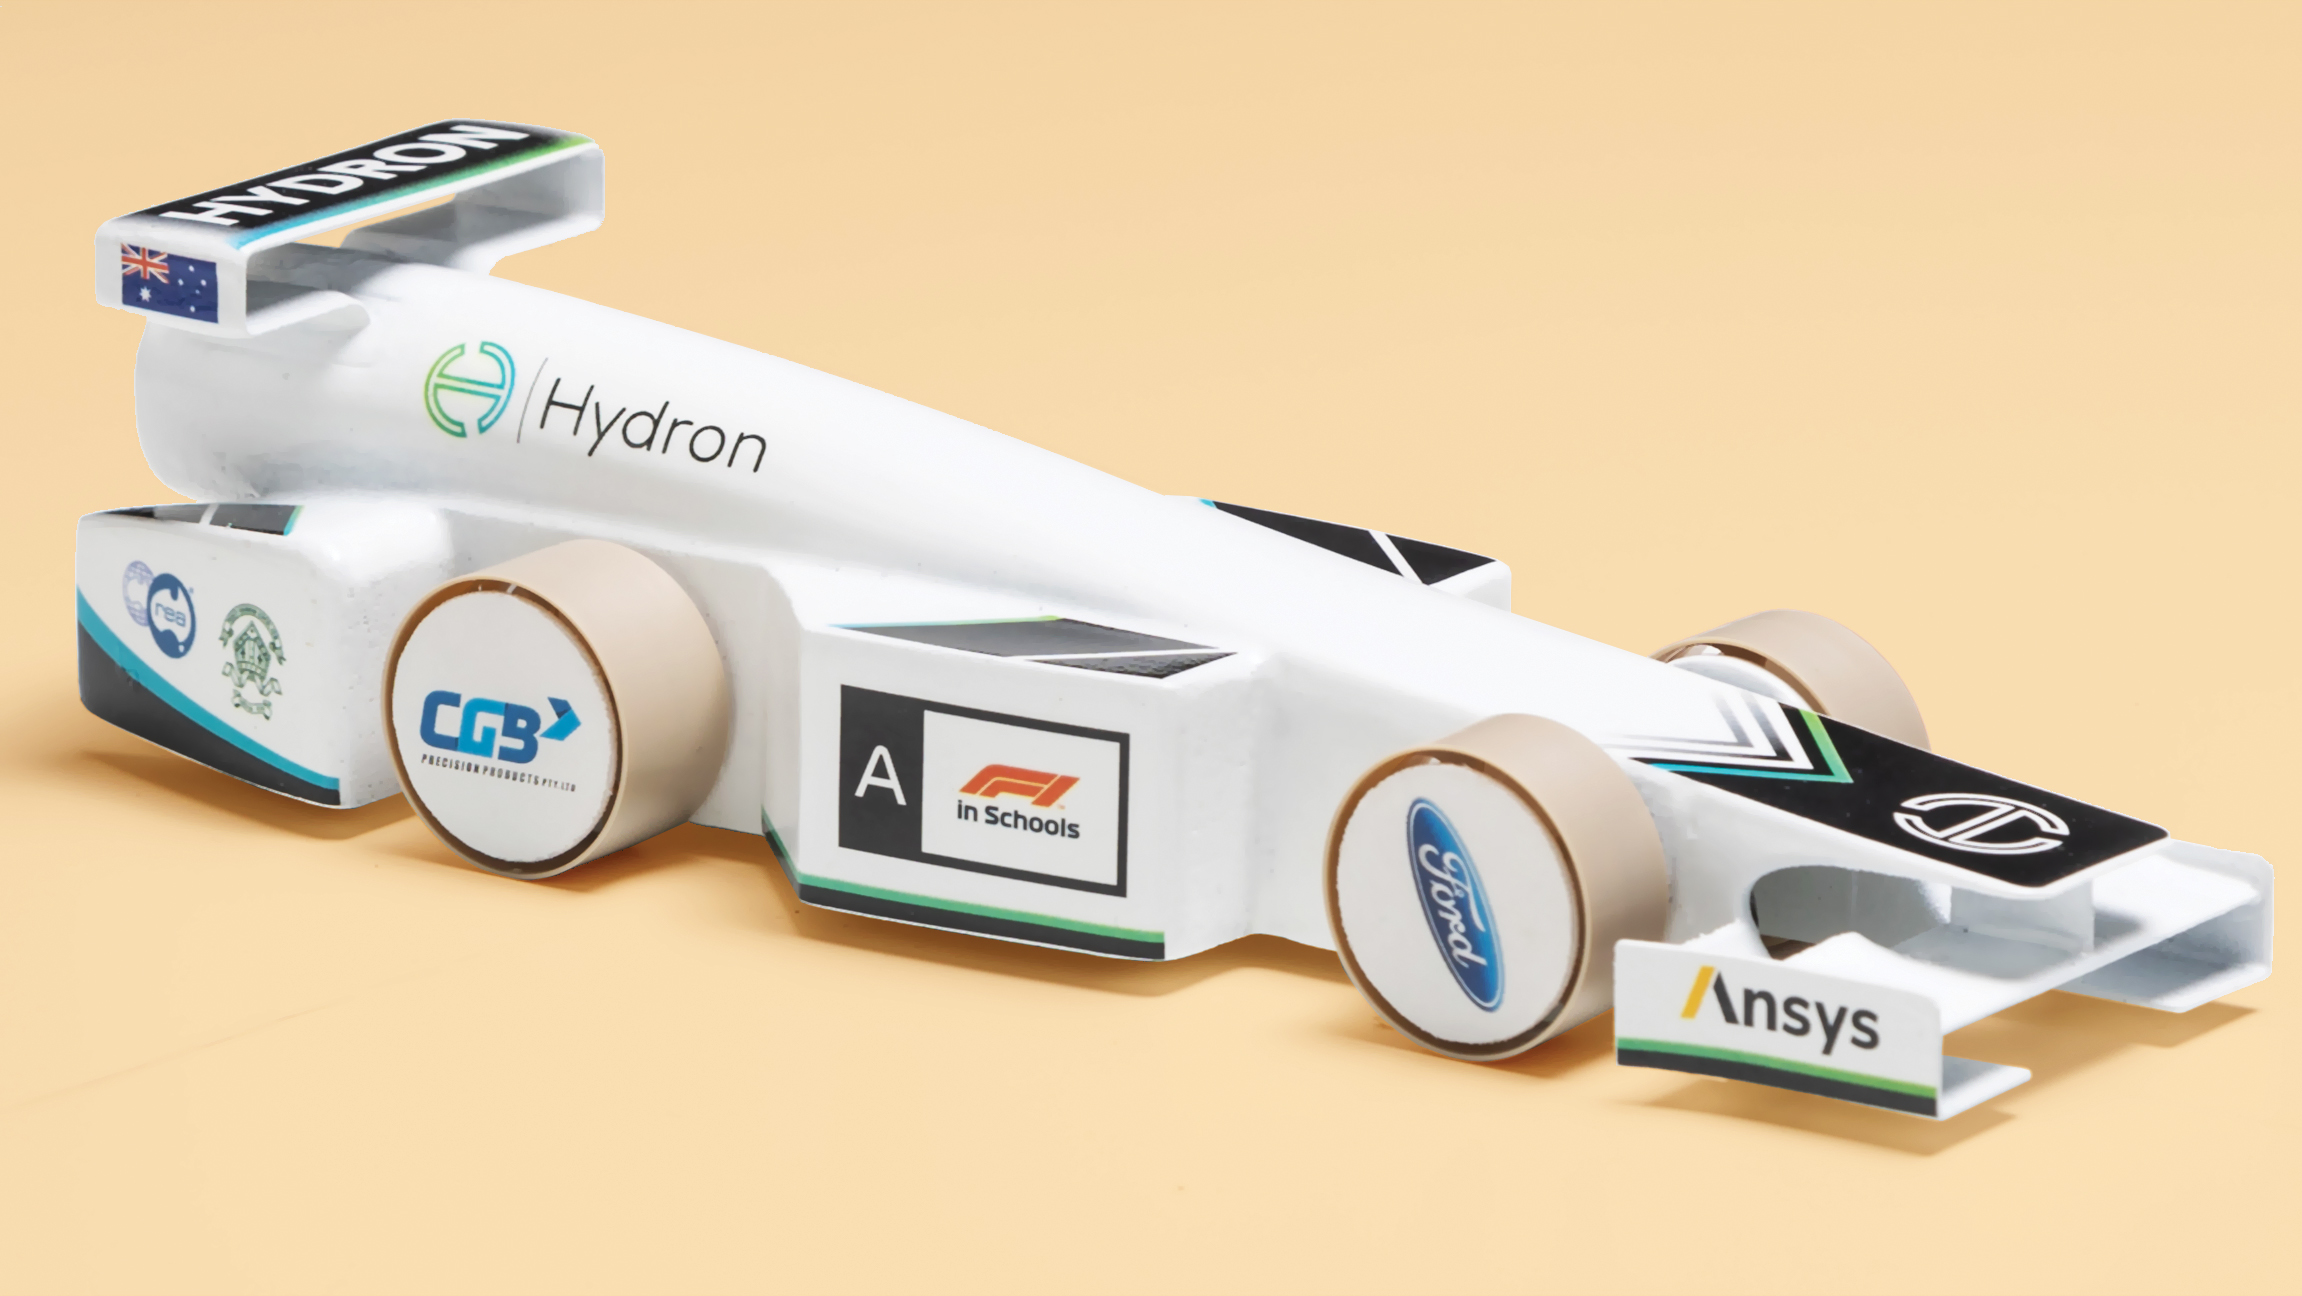 Hydron's F1 concept car